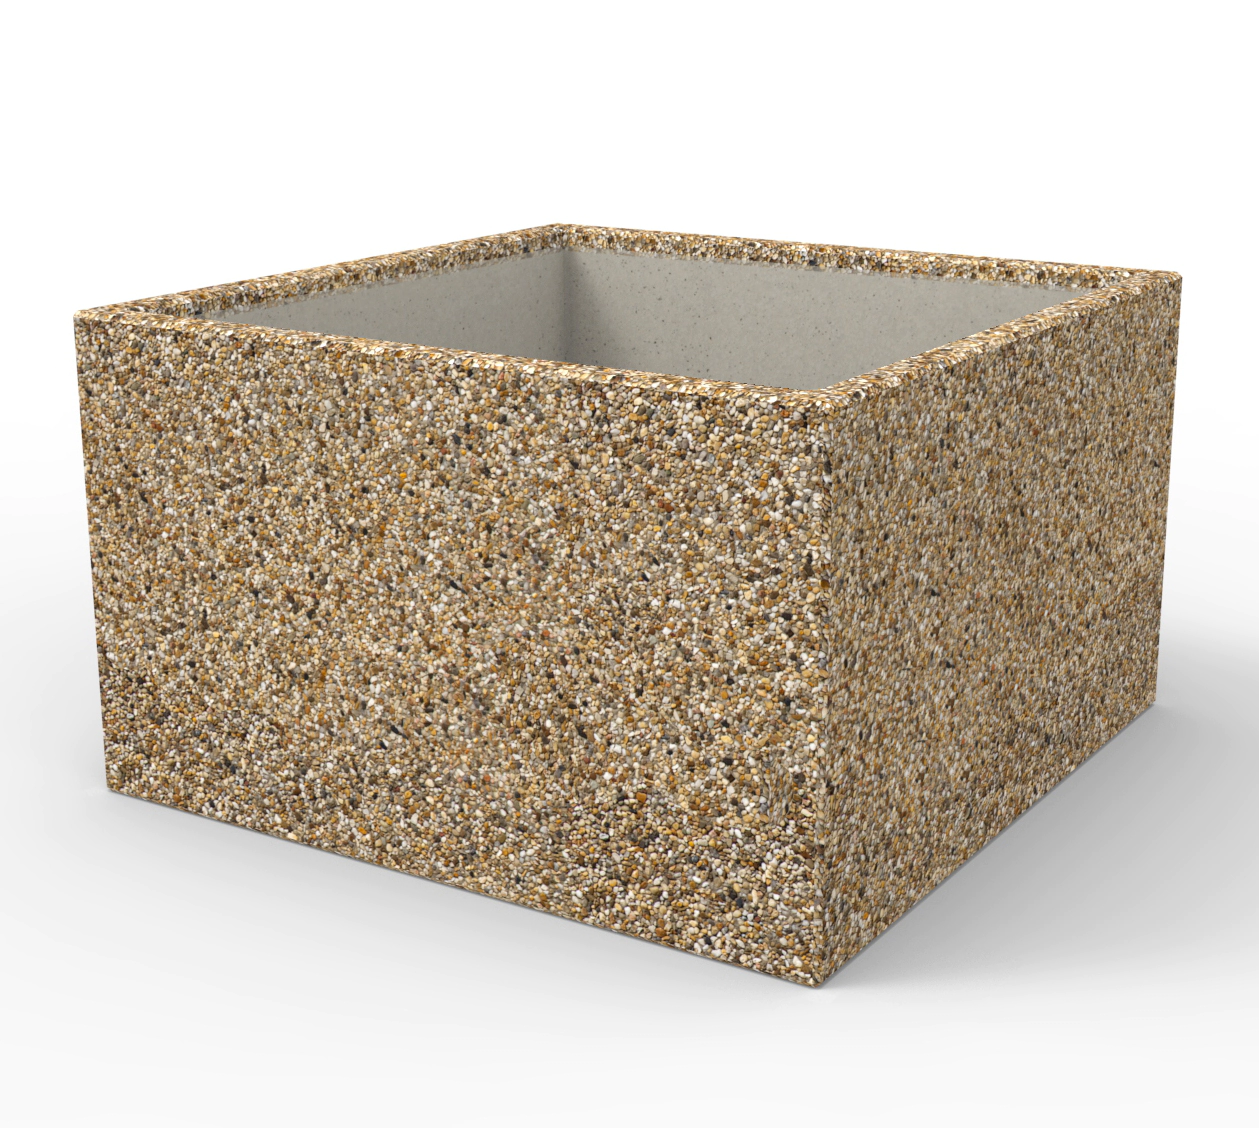 Duże kwadratowe donice betonowe, wykonane wtechnologii betonu płukanego dostępne w szerokiej ofercie koloystycznej kolorów kruszyw naturalnych.